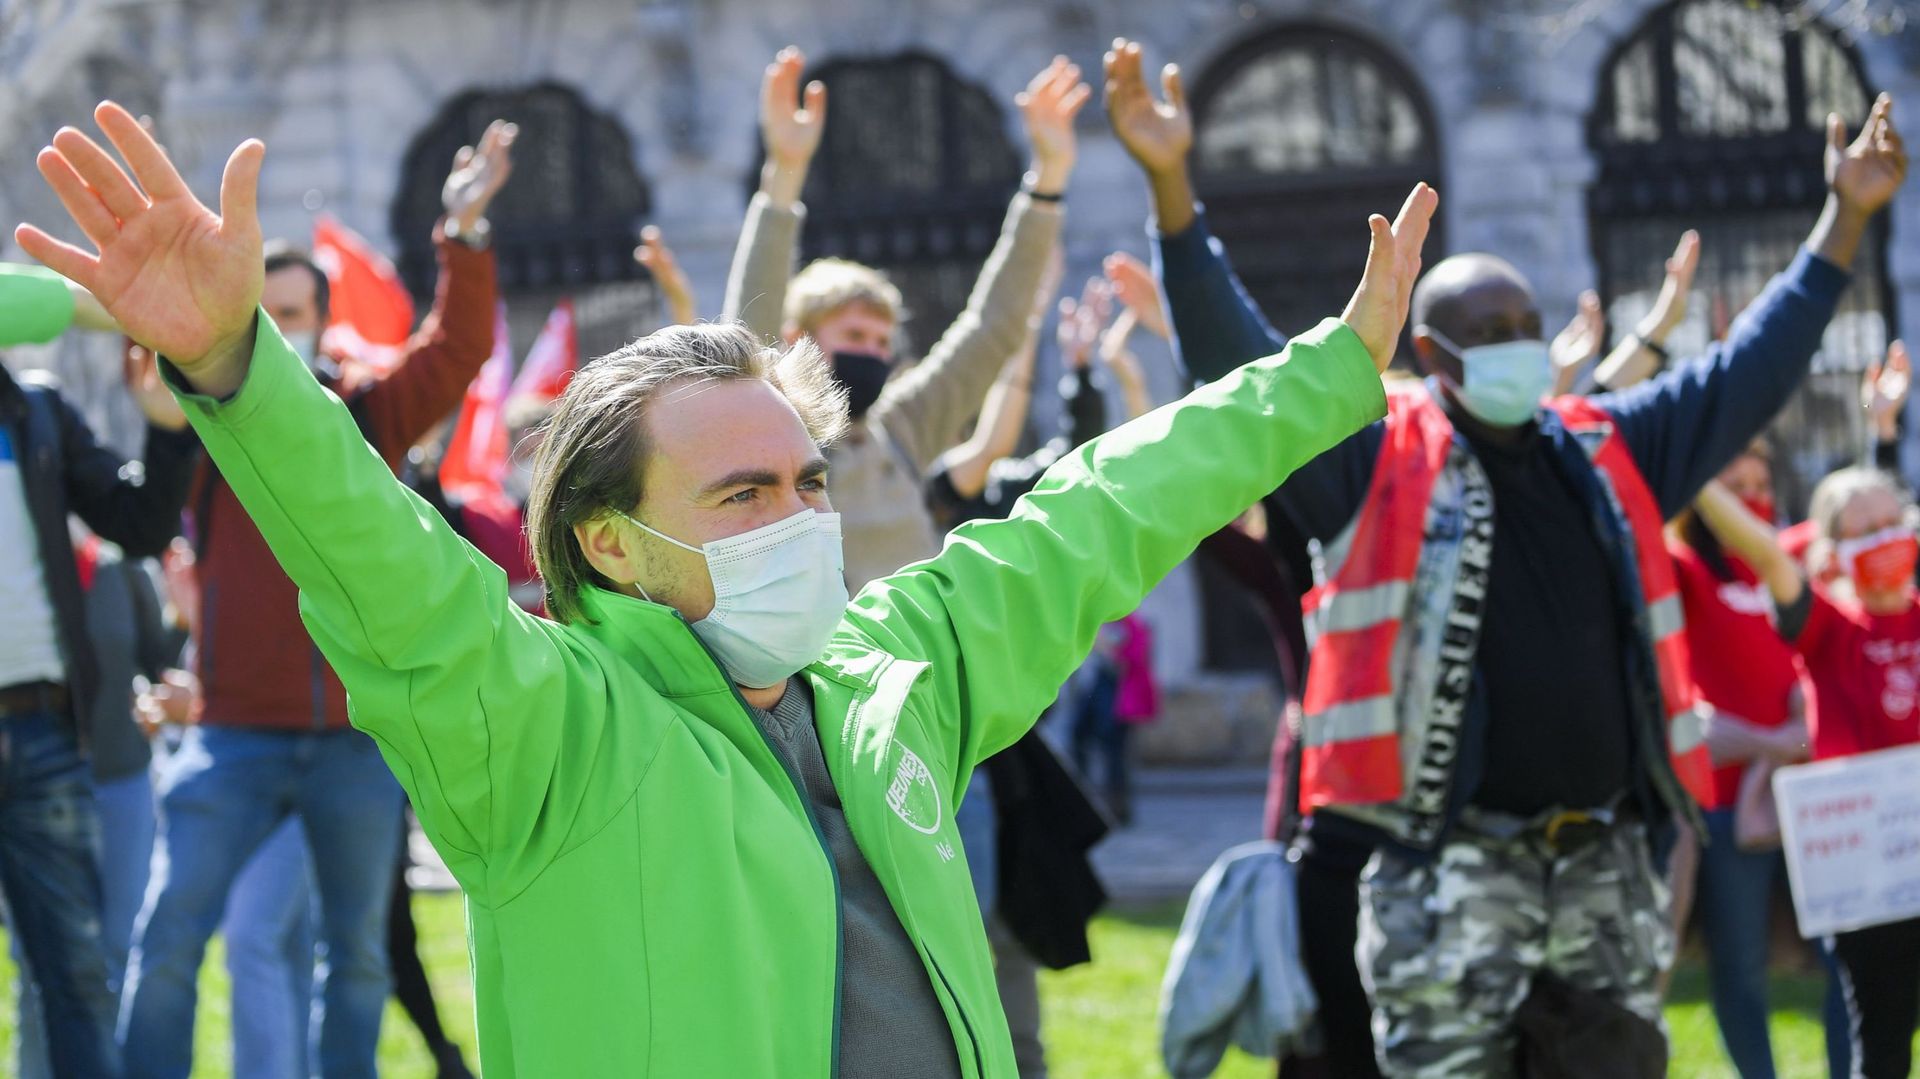 Manifestation nationale: les syndicats seront accompagnés de 4000 manifestants dans les rues de Bruxelles lundi